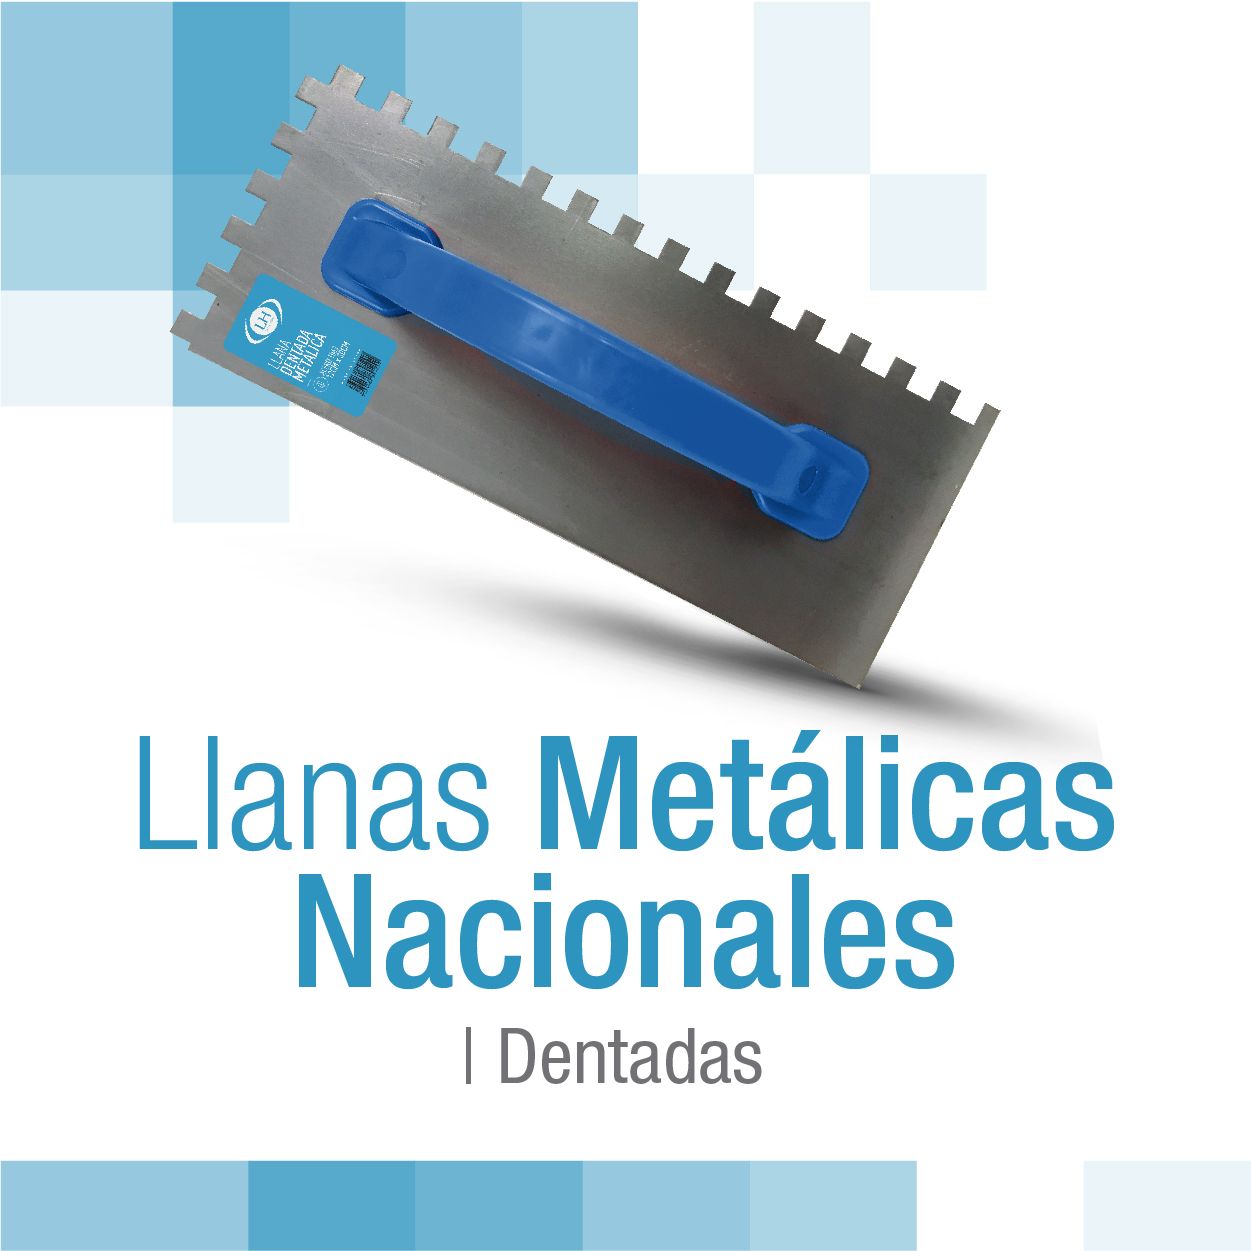 encabezado_llanas_metalicas_nacionales_dentadas